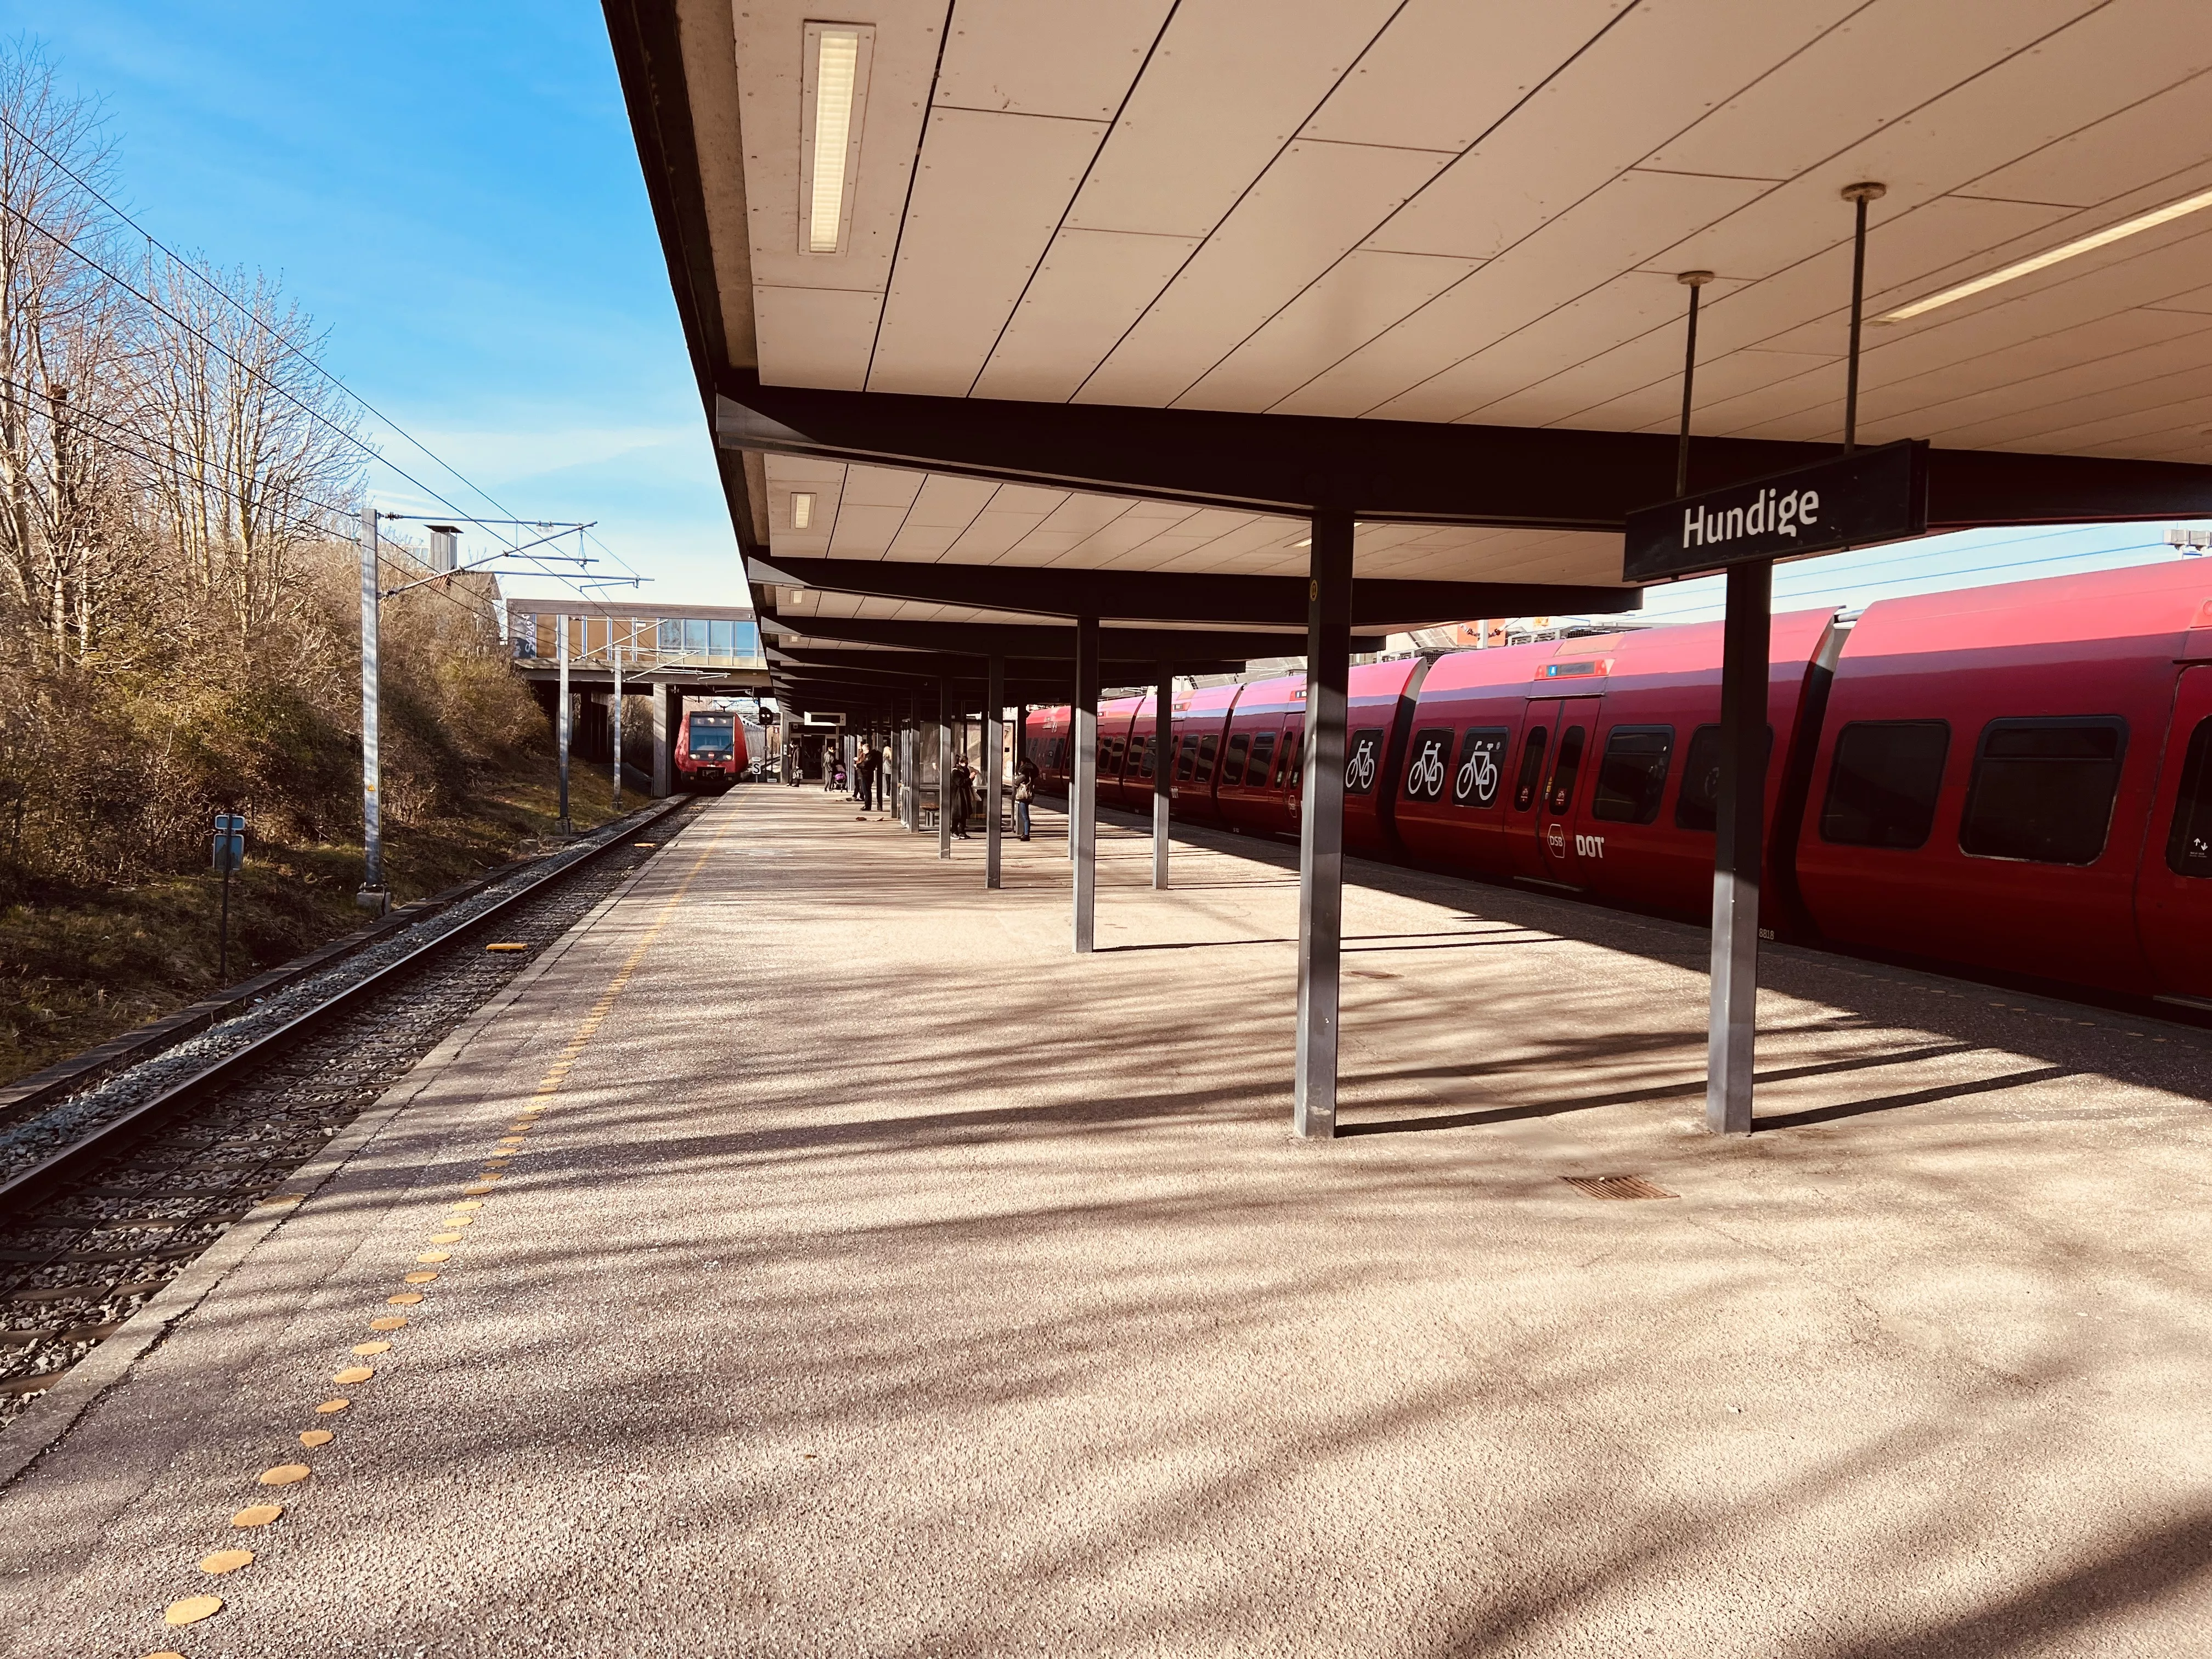 Billede af tog ud for Hundige S-togsstation.